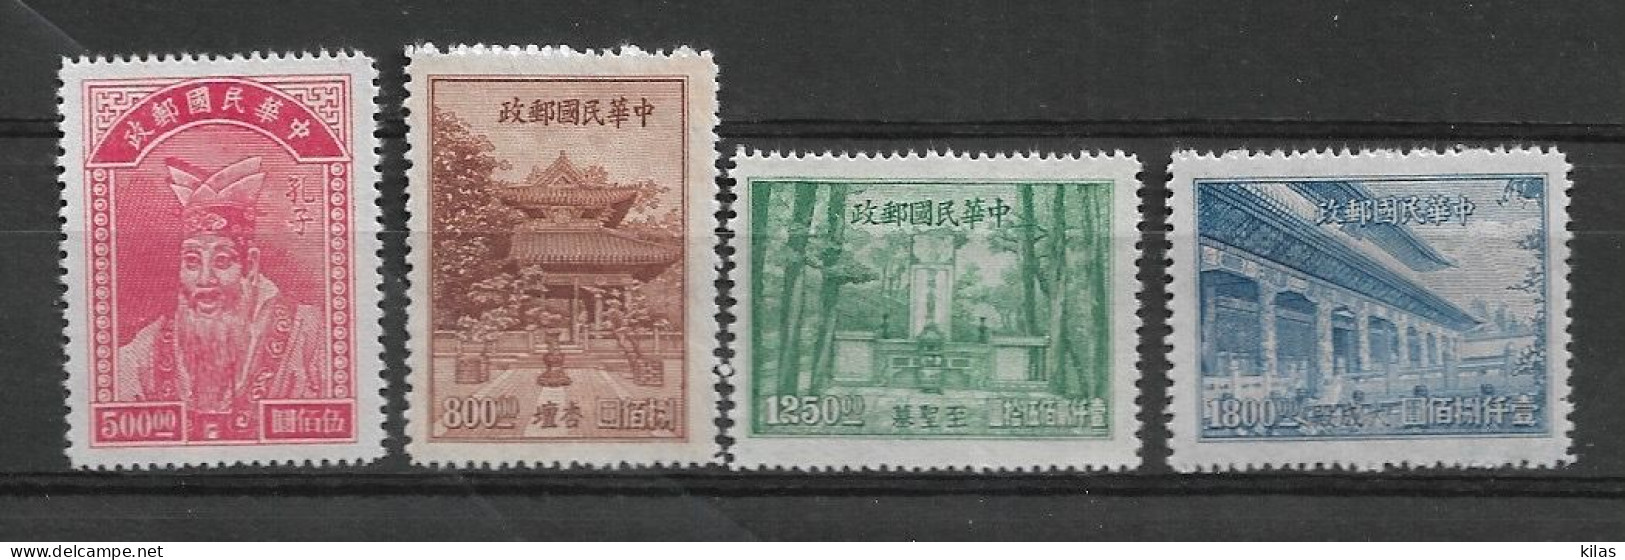 CHINA 1947 Confucius MH - Ongebruikt